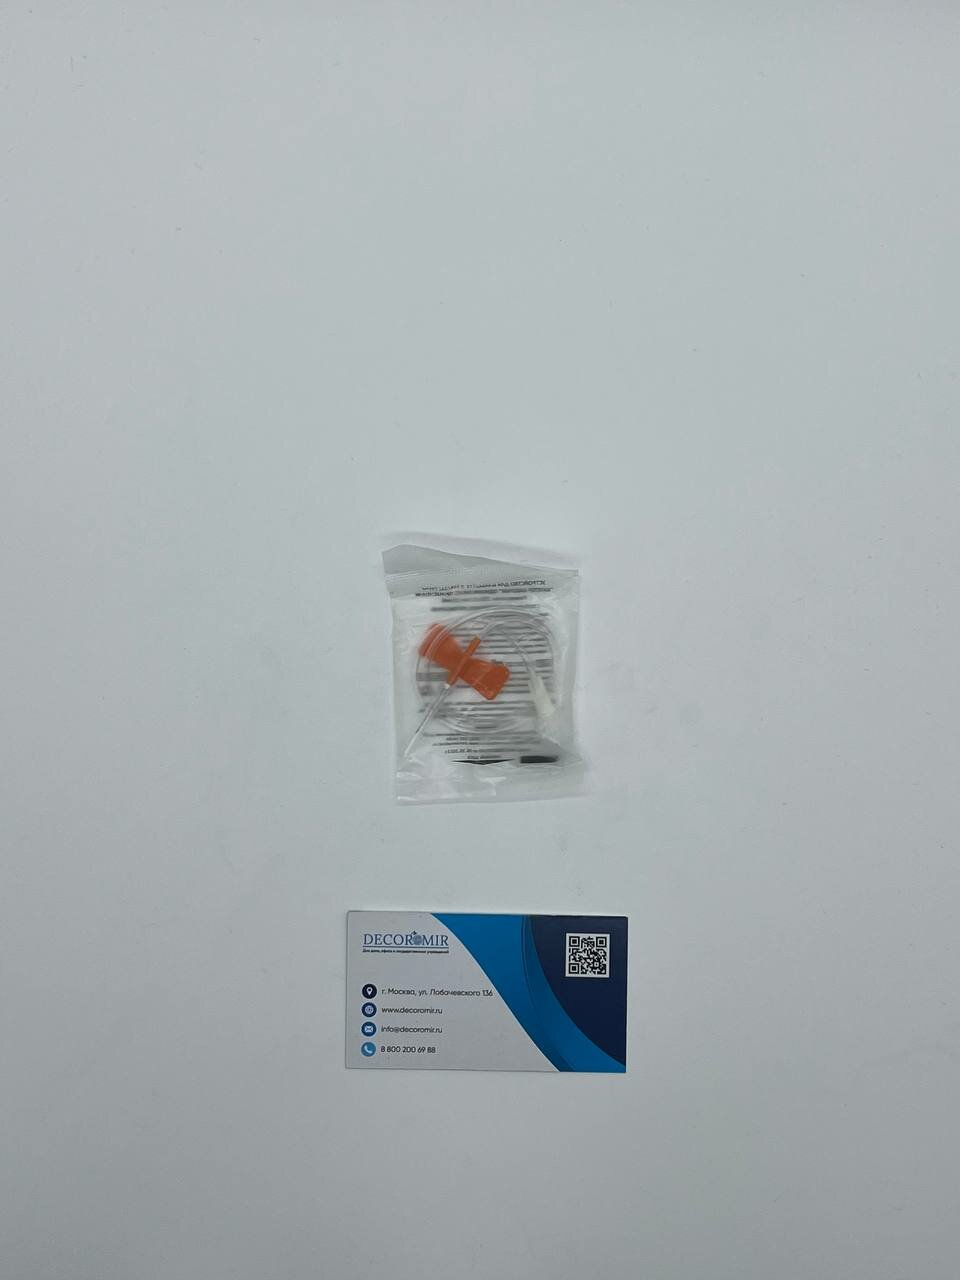 100 шт. 25G Канюля инфузионная оранжевый (Игла бабочка) Decoromir стерильная